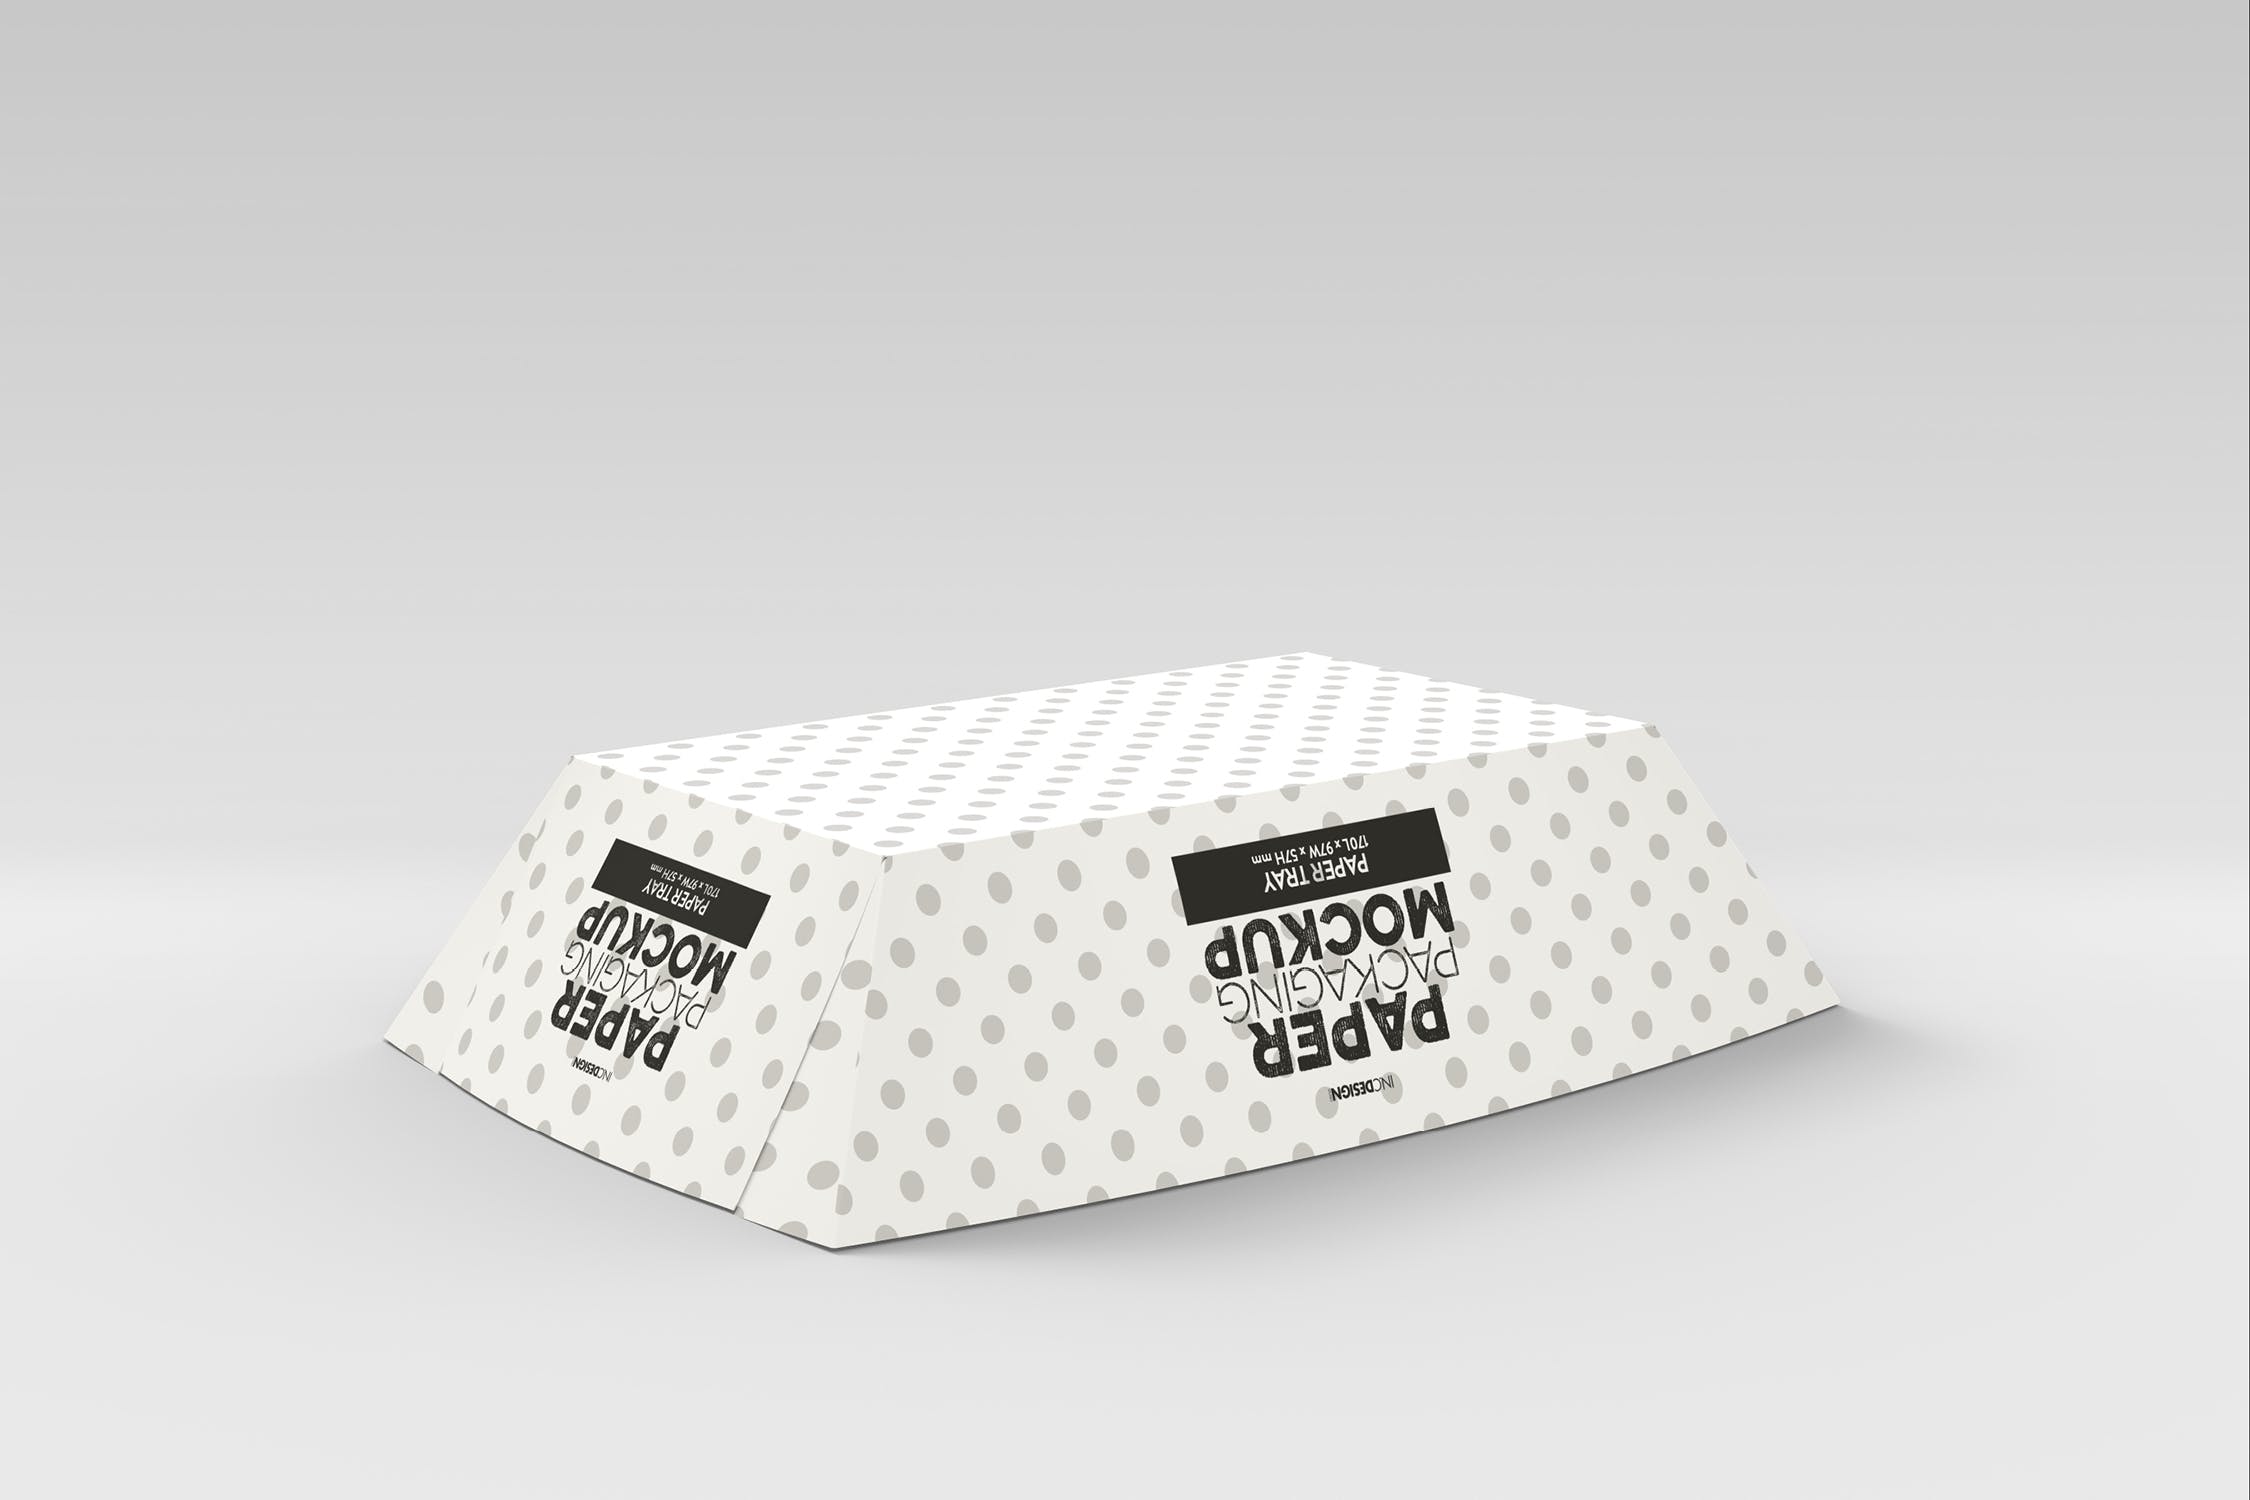 创意纸盘包装设计效果图样机模板 Paper Tray 1 Packaging Mockup插图(3)